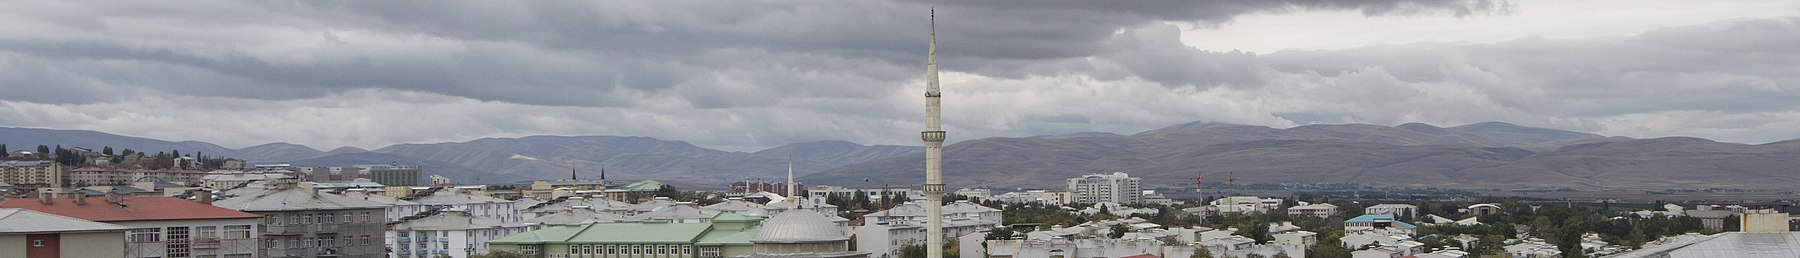 Erzurum Wikivoyage banner.jpg